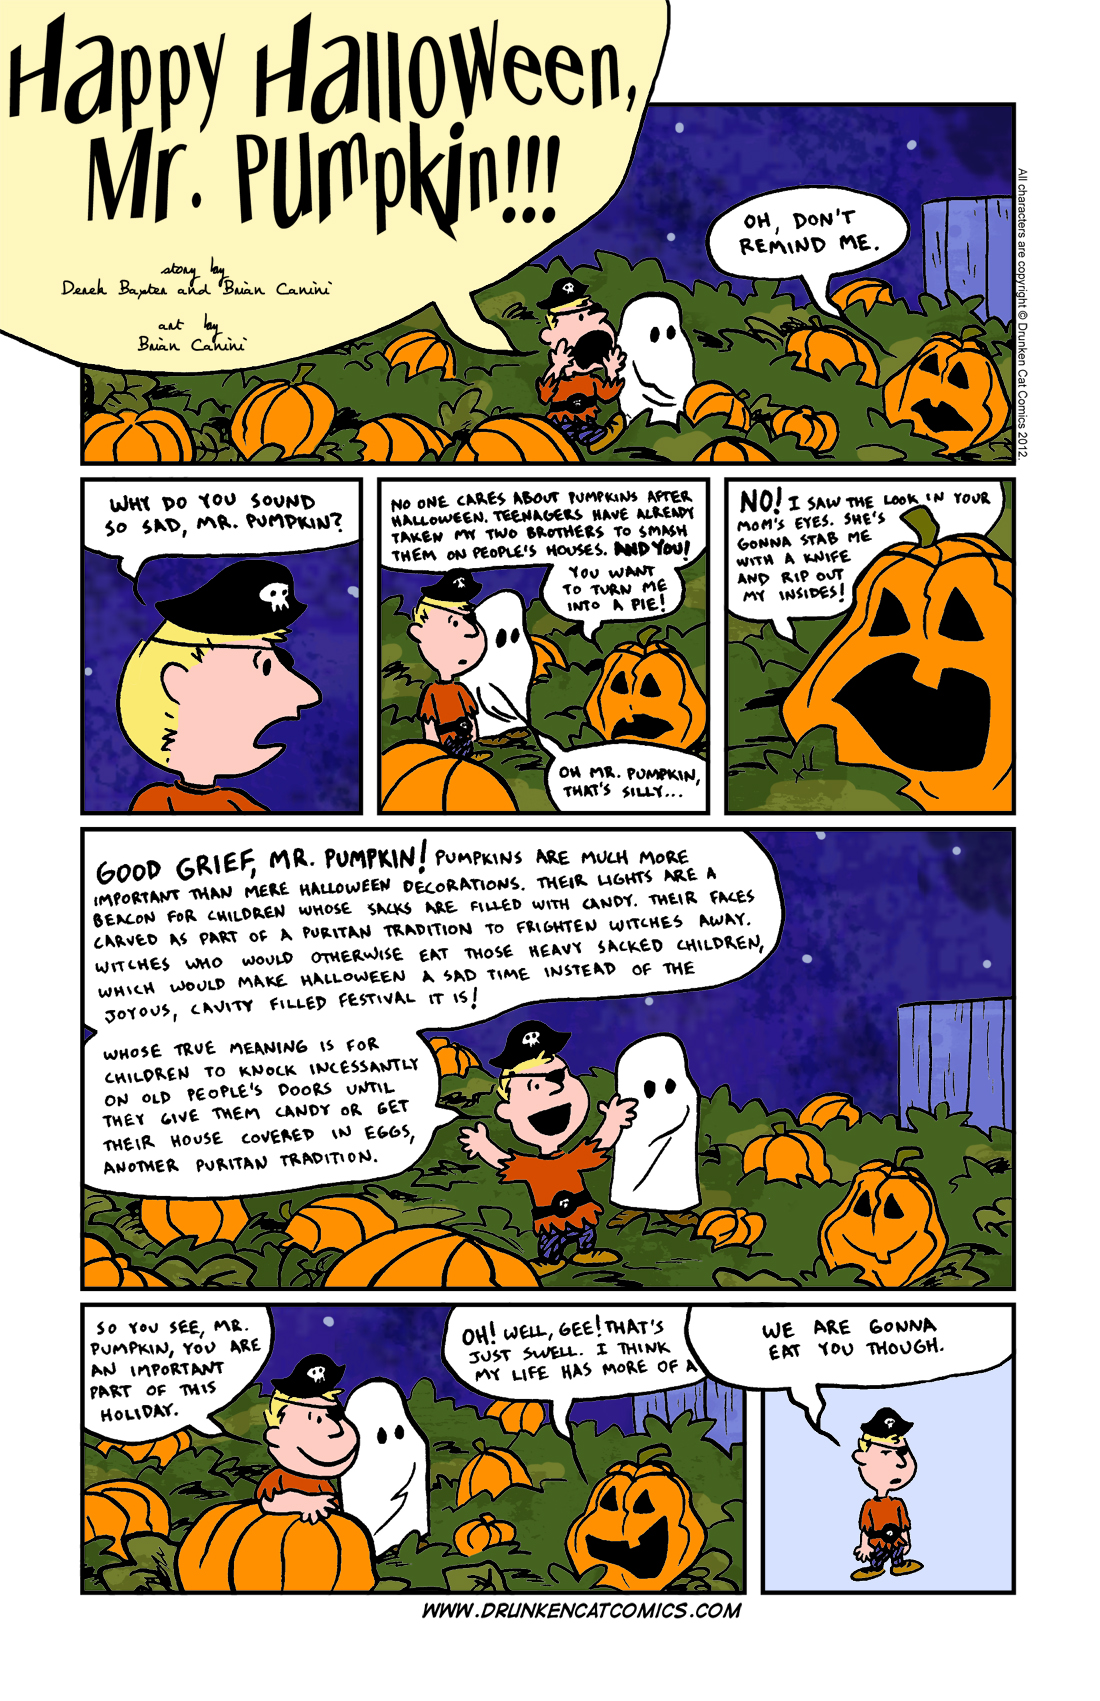 Happy Halloween, Mr. Pumpkin!!!